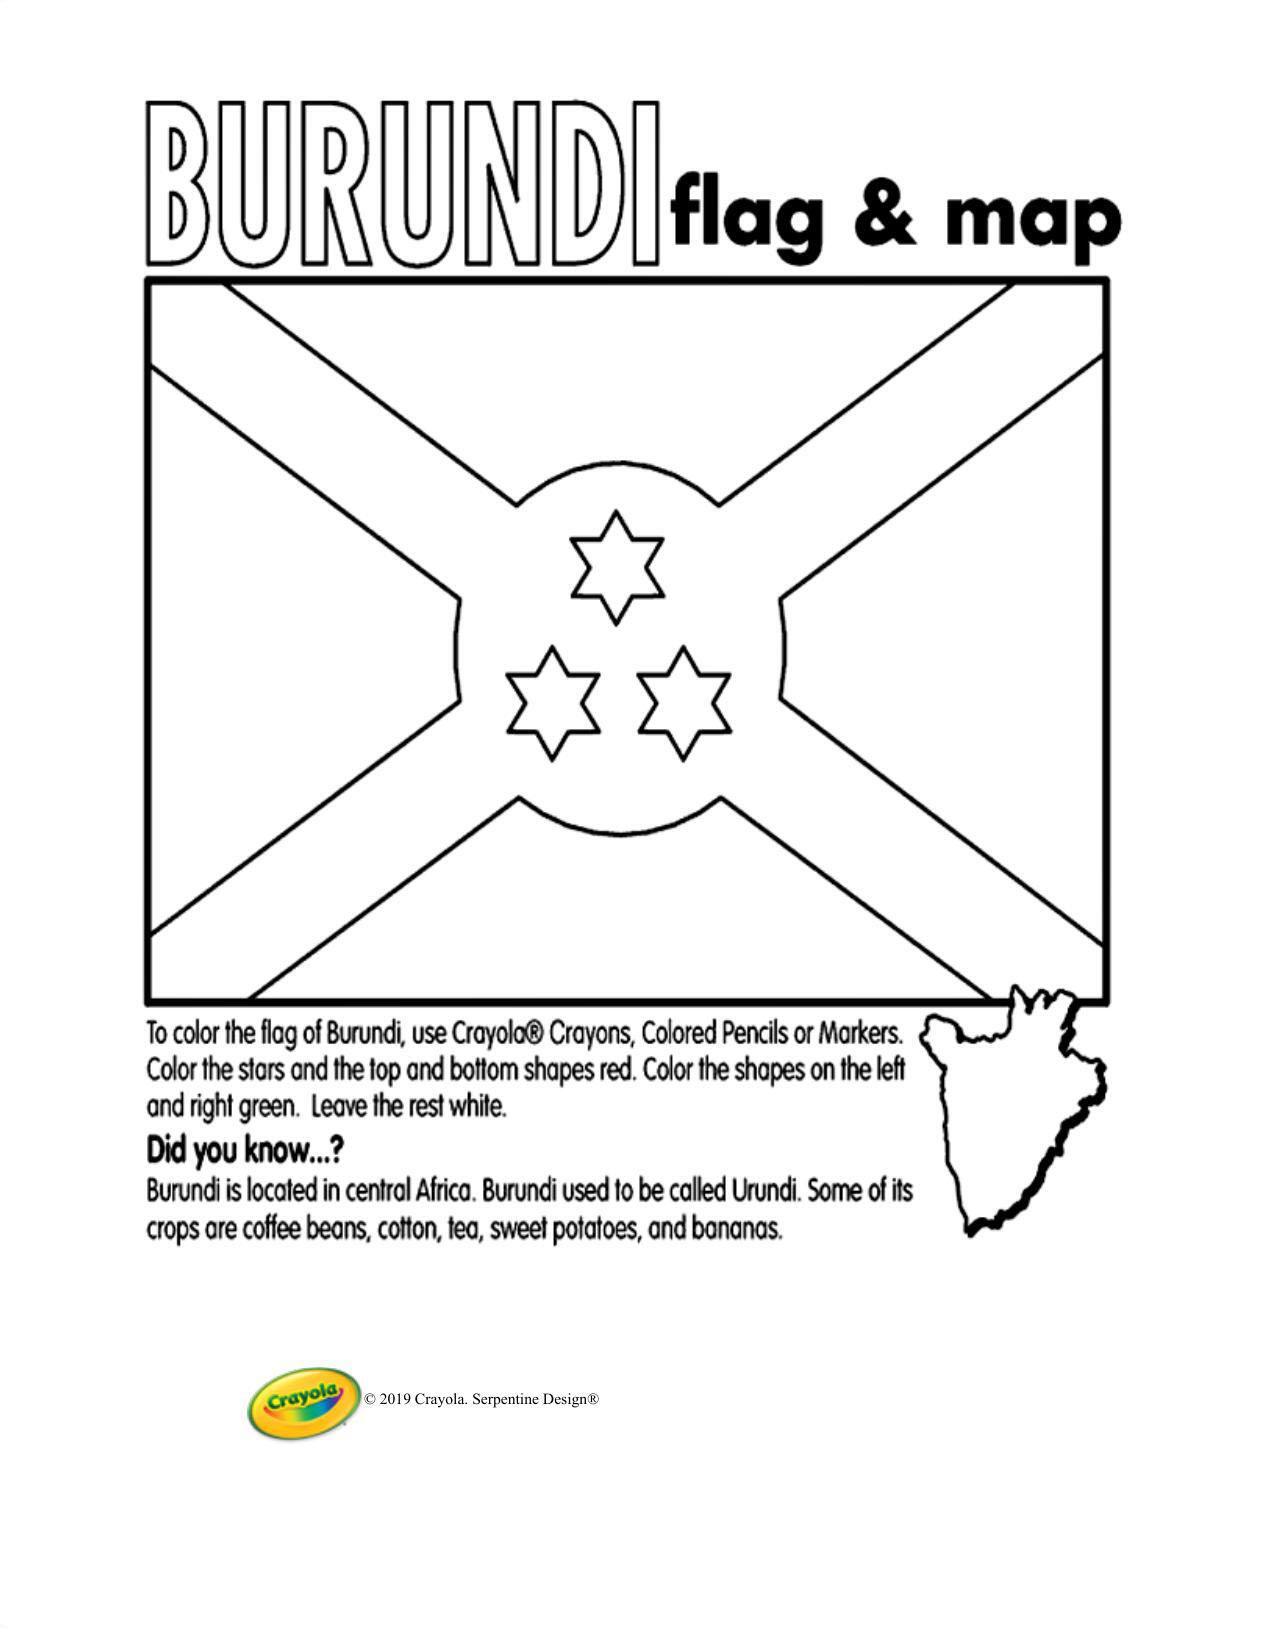 Burundi Updated